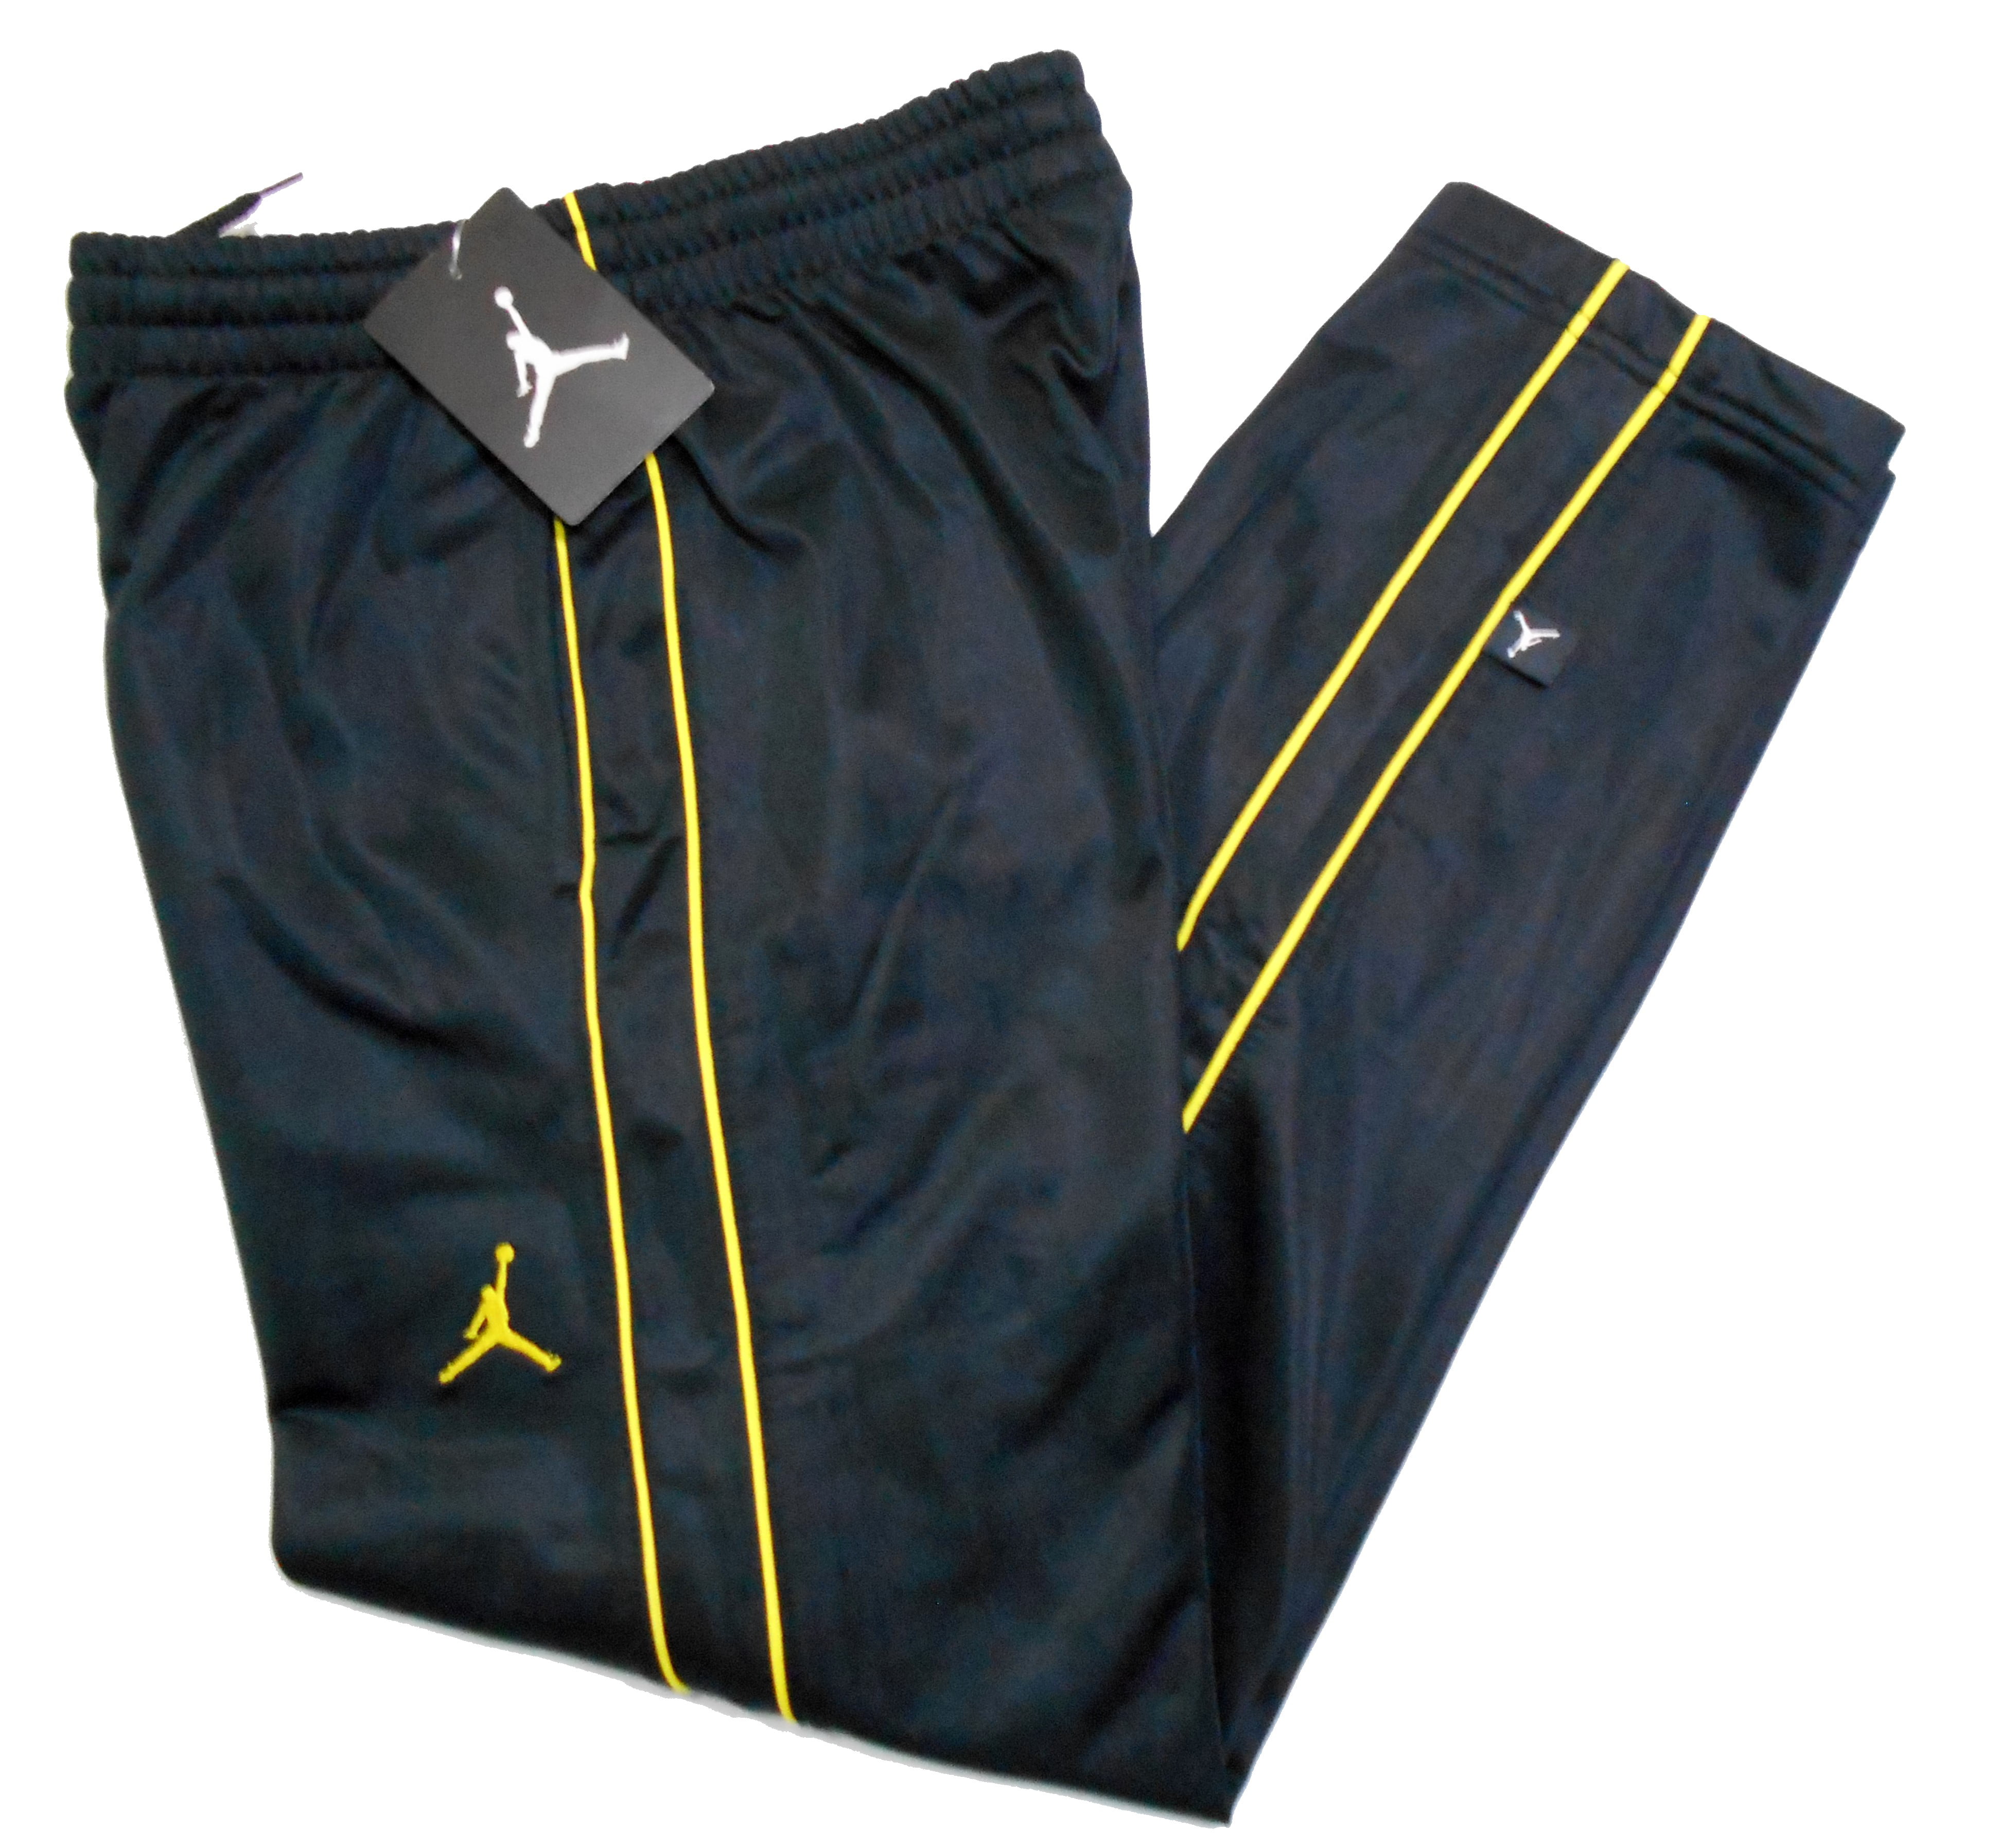 black and yellow jordan pants